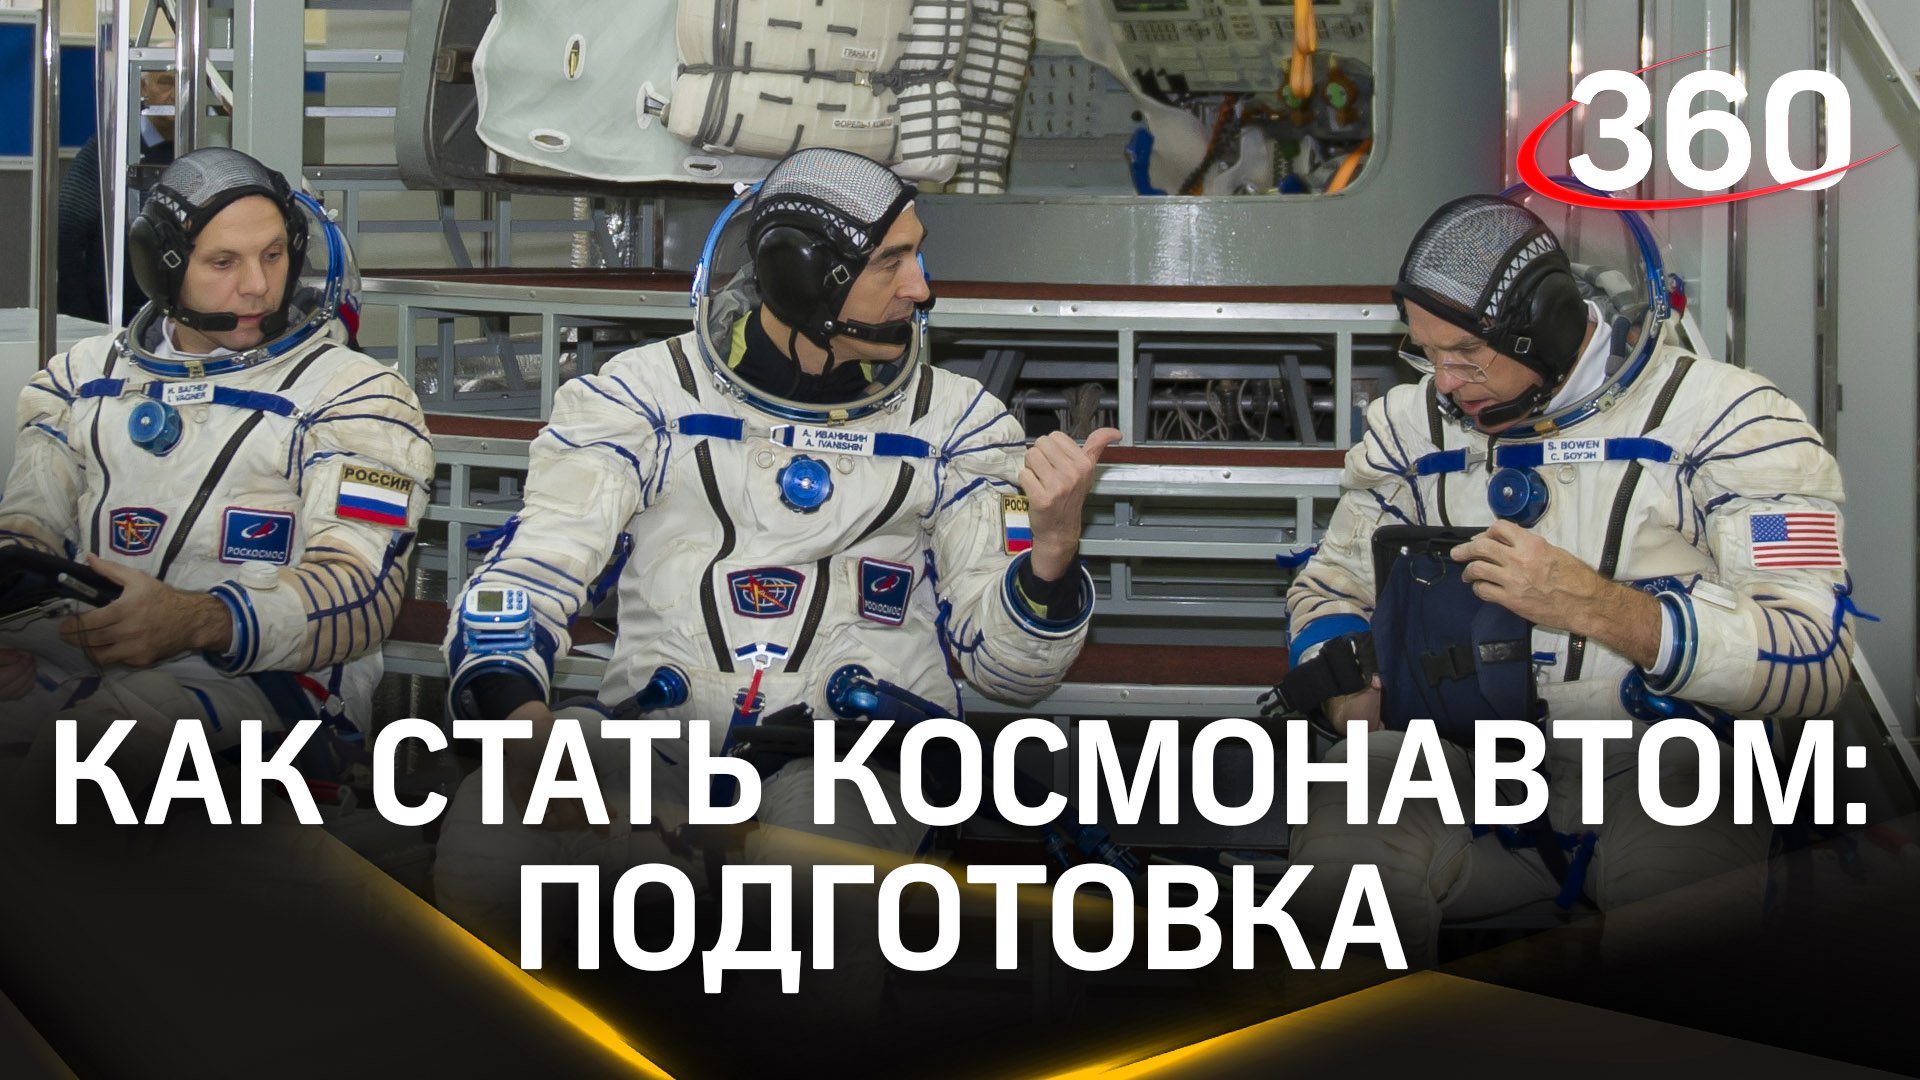 От 5 до 10 лет – именно столько времени нужно космонавтам, чтобы подготовиться к полету